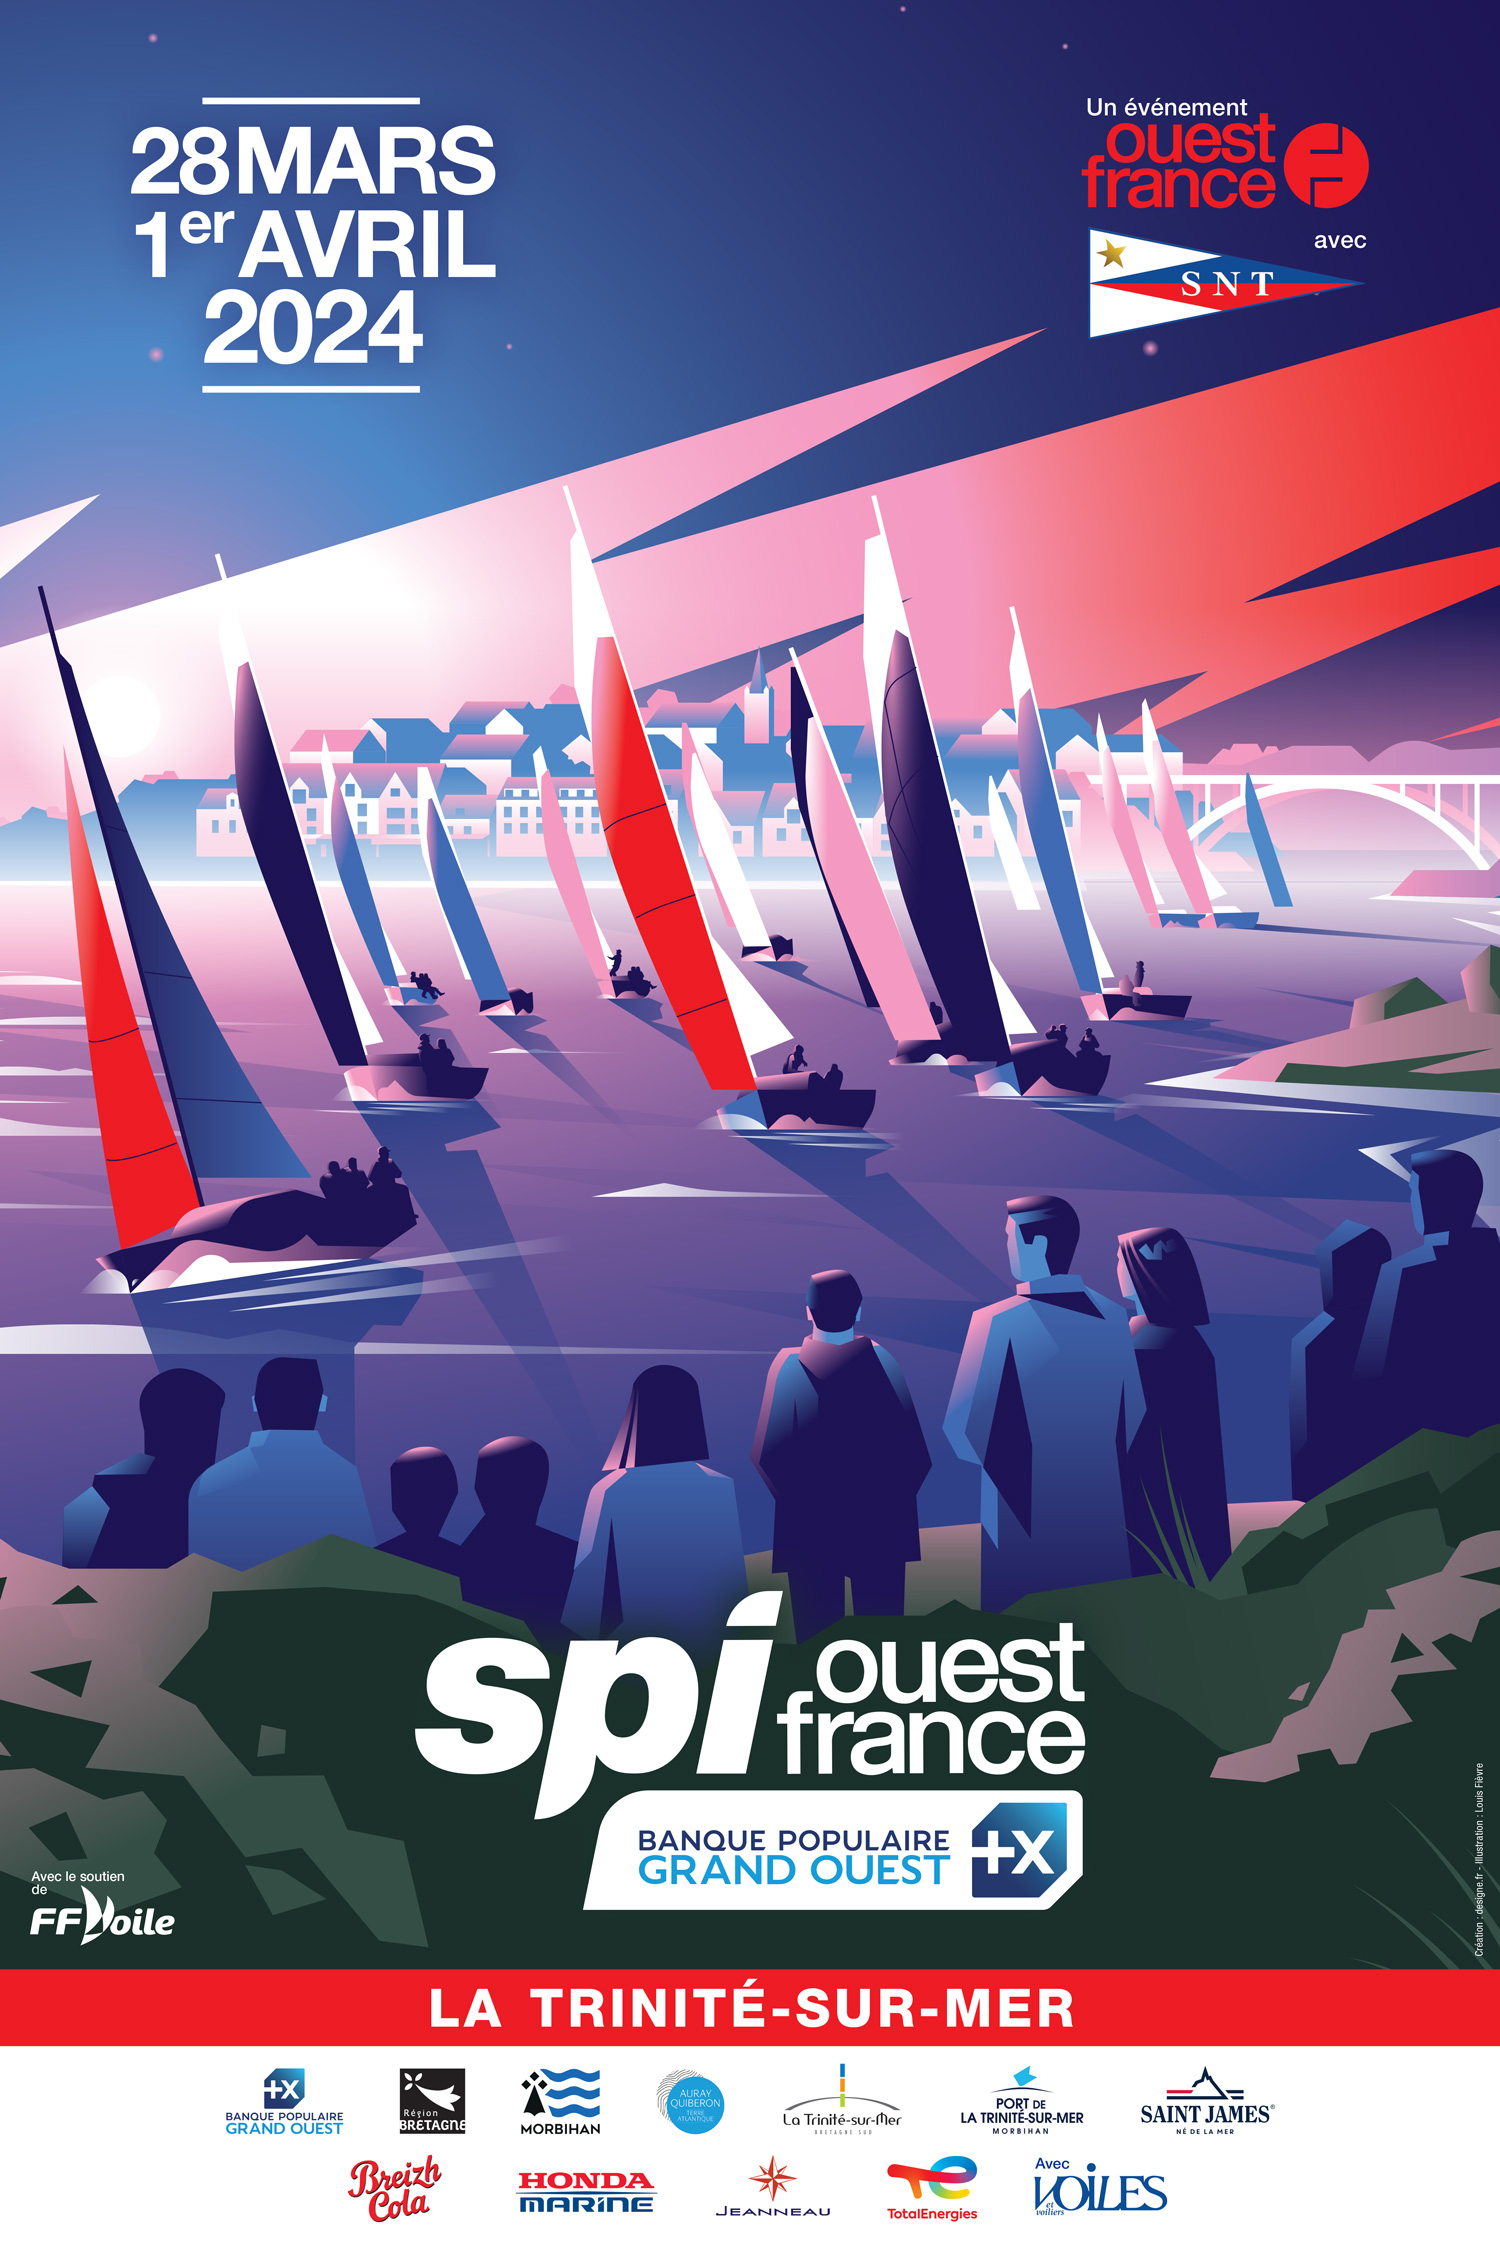 Illustration de l'affiche du Spi Ouest France 2024, mettant en avant la course de voile emblématique.